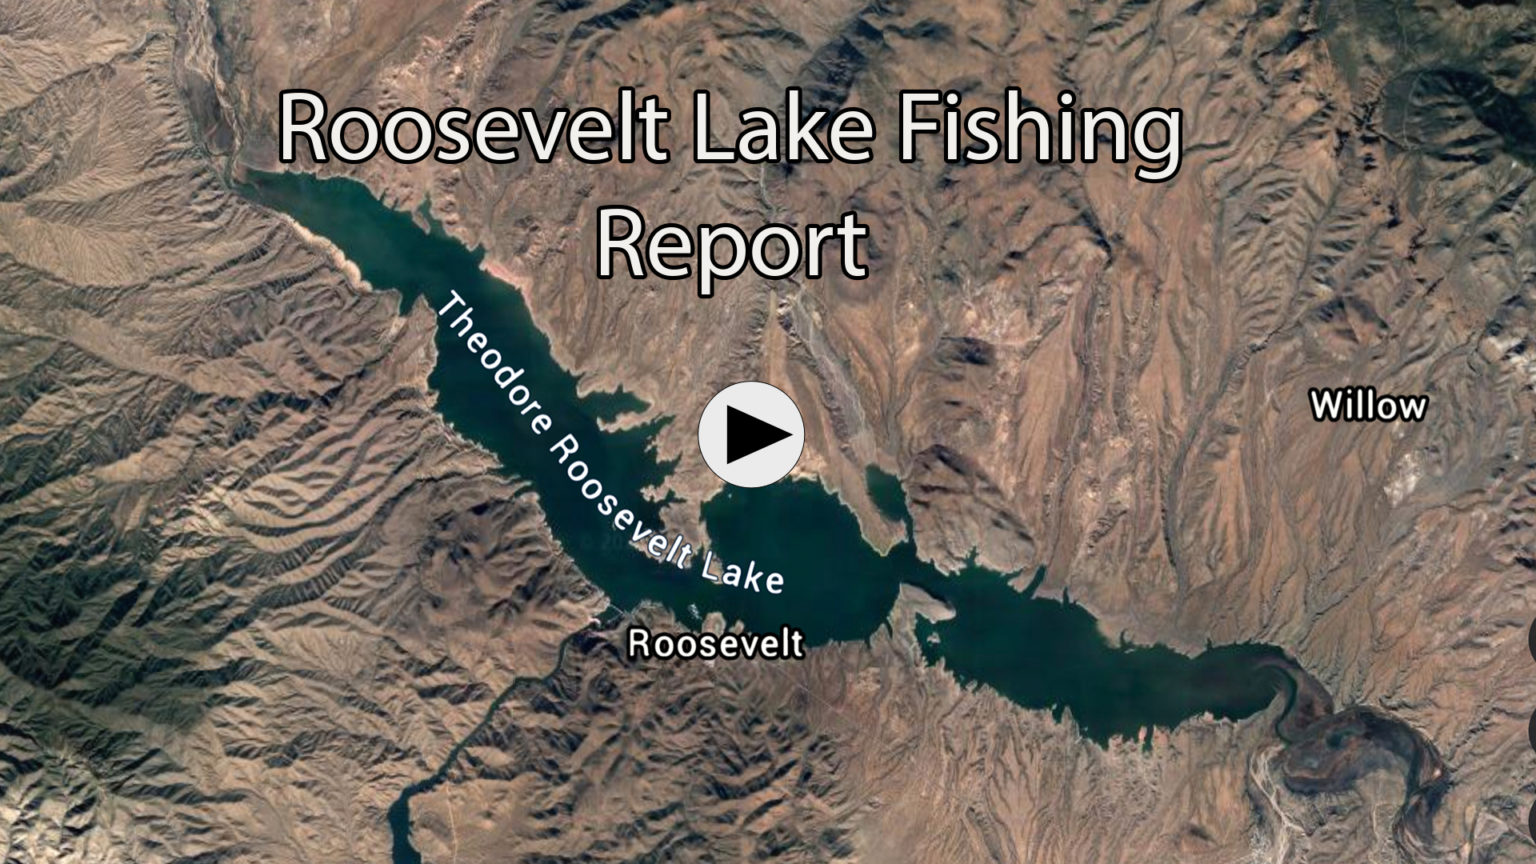 Roosevelt Lake Fishing Report. December 31, 2020 Gary Senft Fishing Arizona